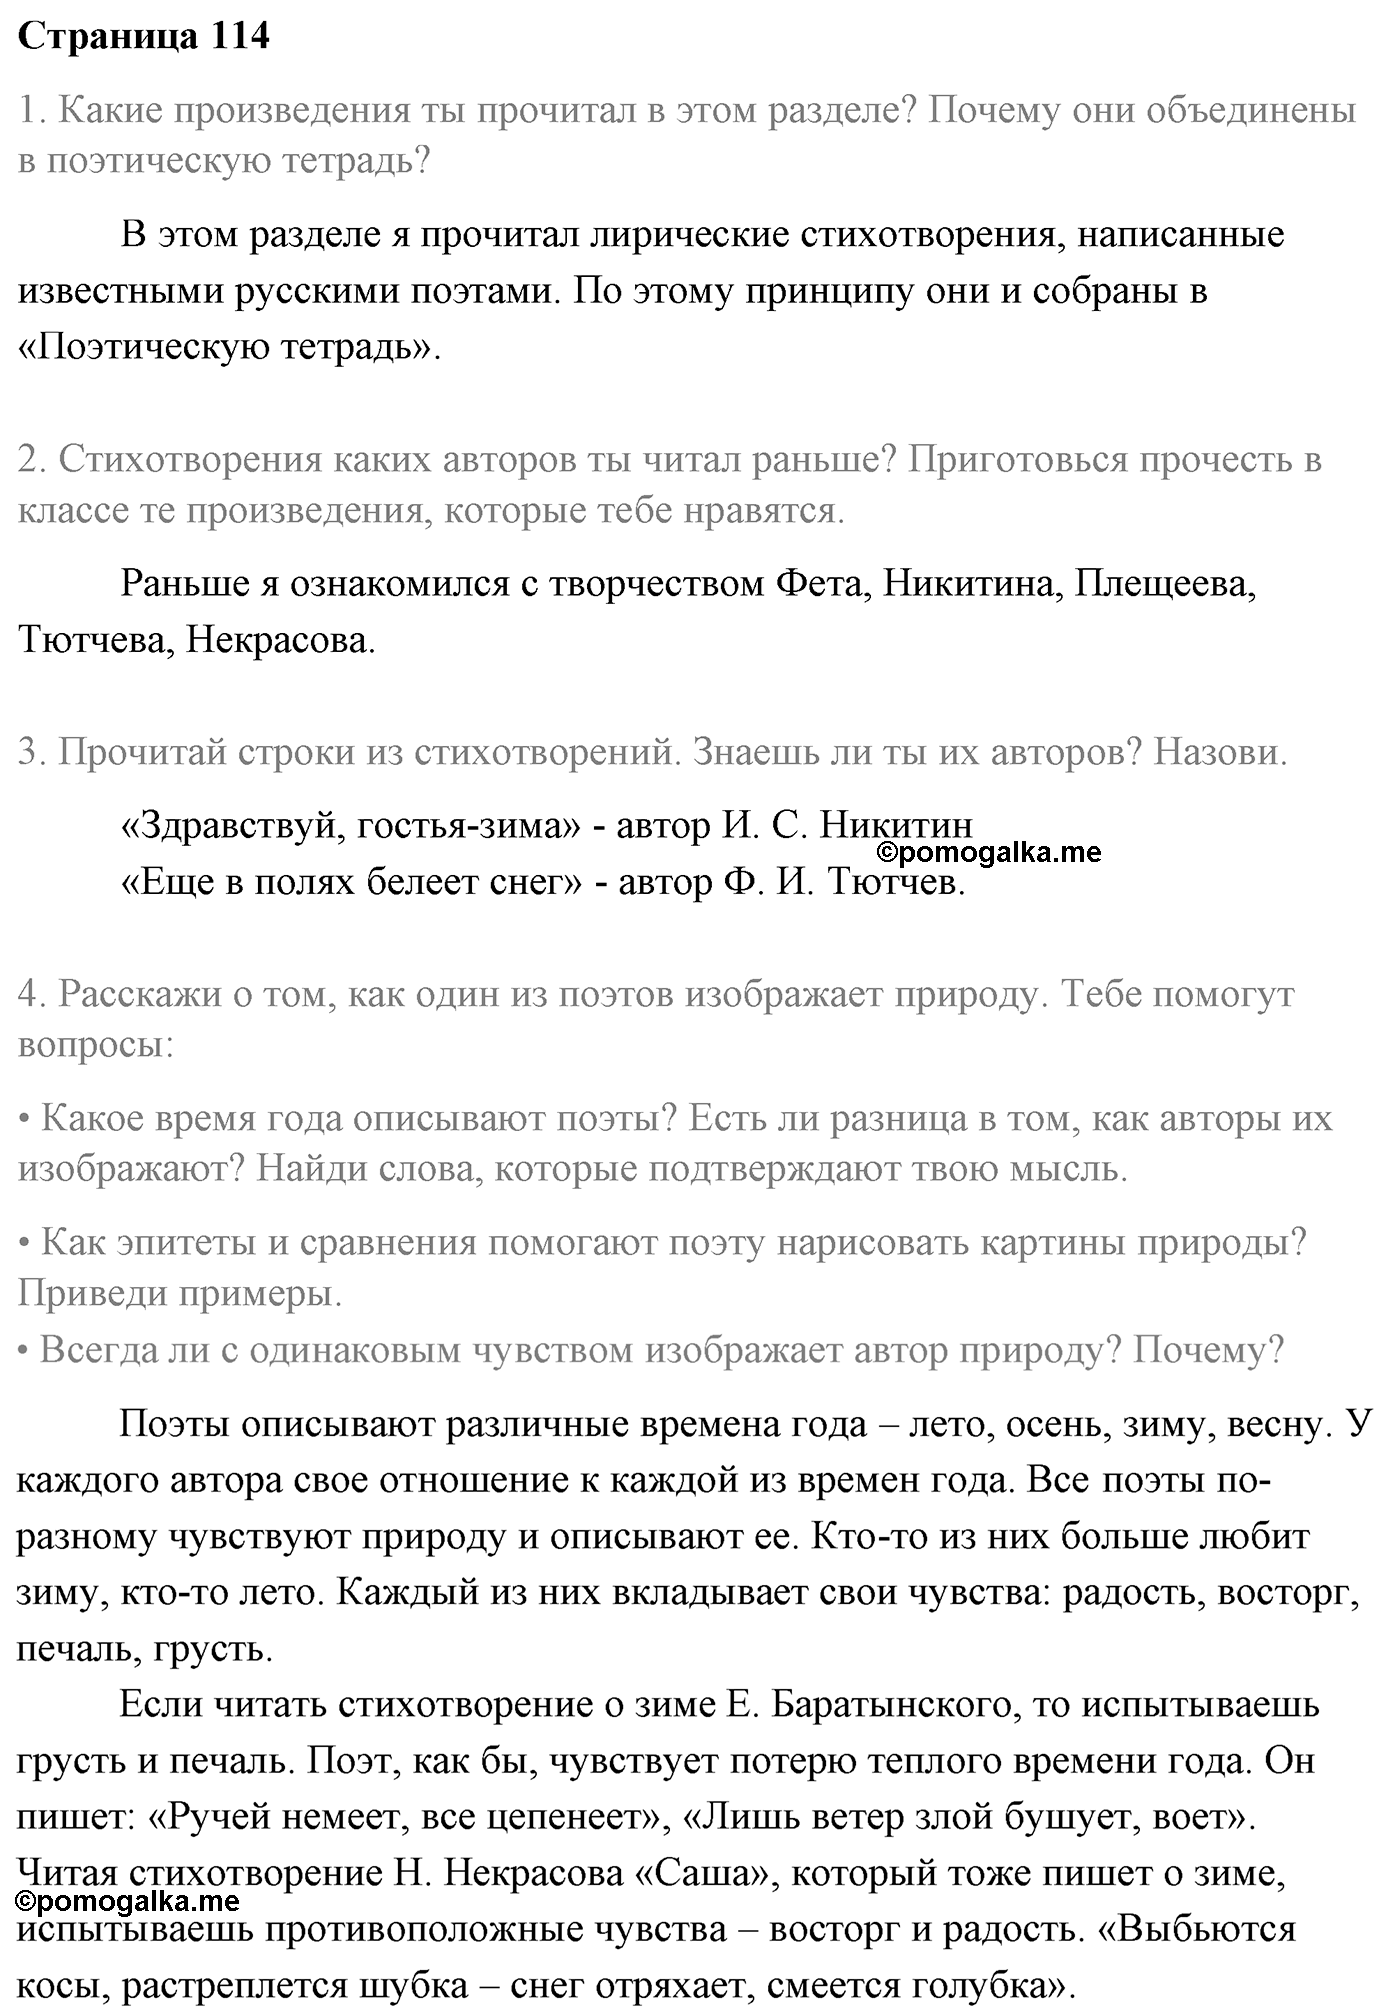 Часть 1 Страница 114 литературное чтение 4 класс Климанова, Горецкий, Голованова, Виноградская, Бойкина 2021 год